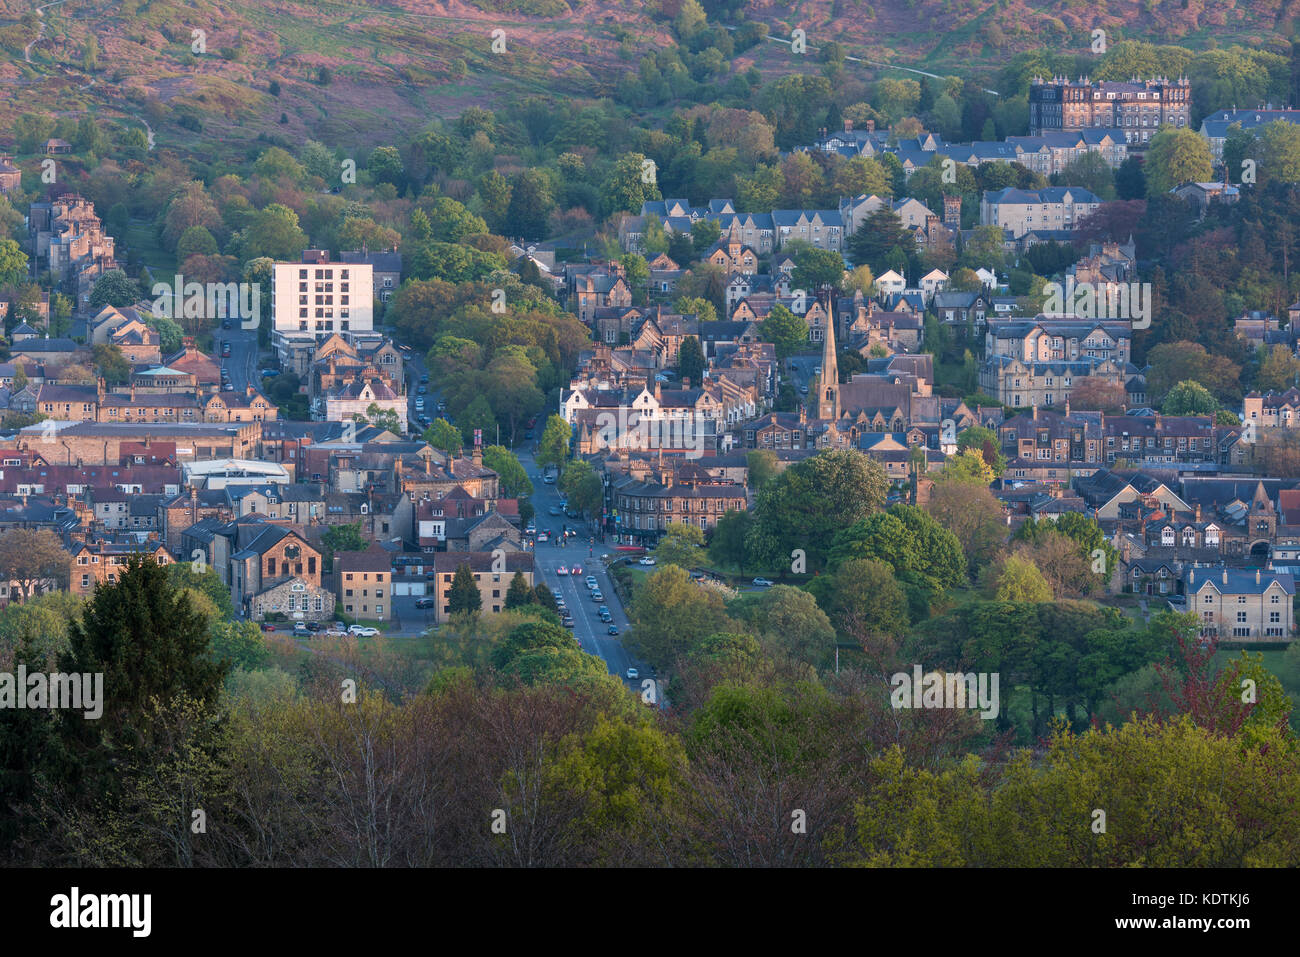 Soir vue sur les bâtiments résidentiels & high street, nichée dans la vallée de Wharfe sous la lande - centre-ville de Bradford, West Yorkshire, Angleterre, Royaume-Uni. Banque D'Images